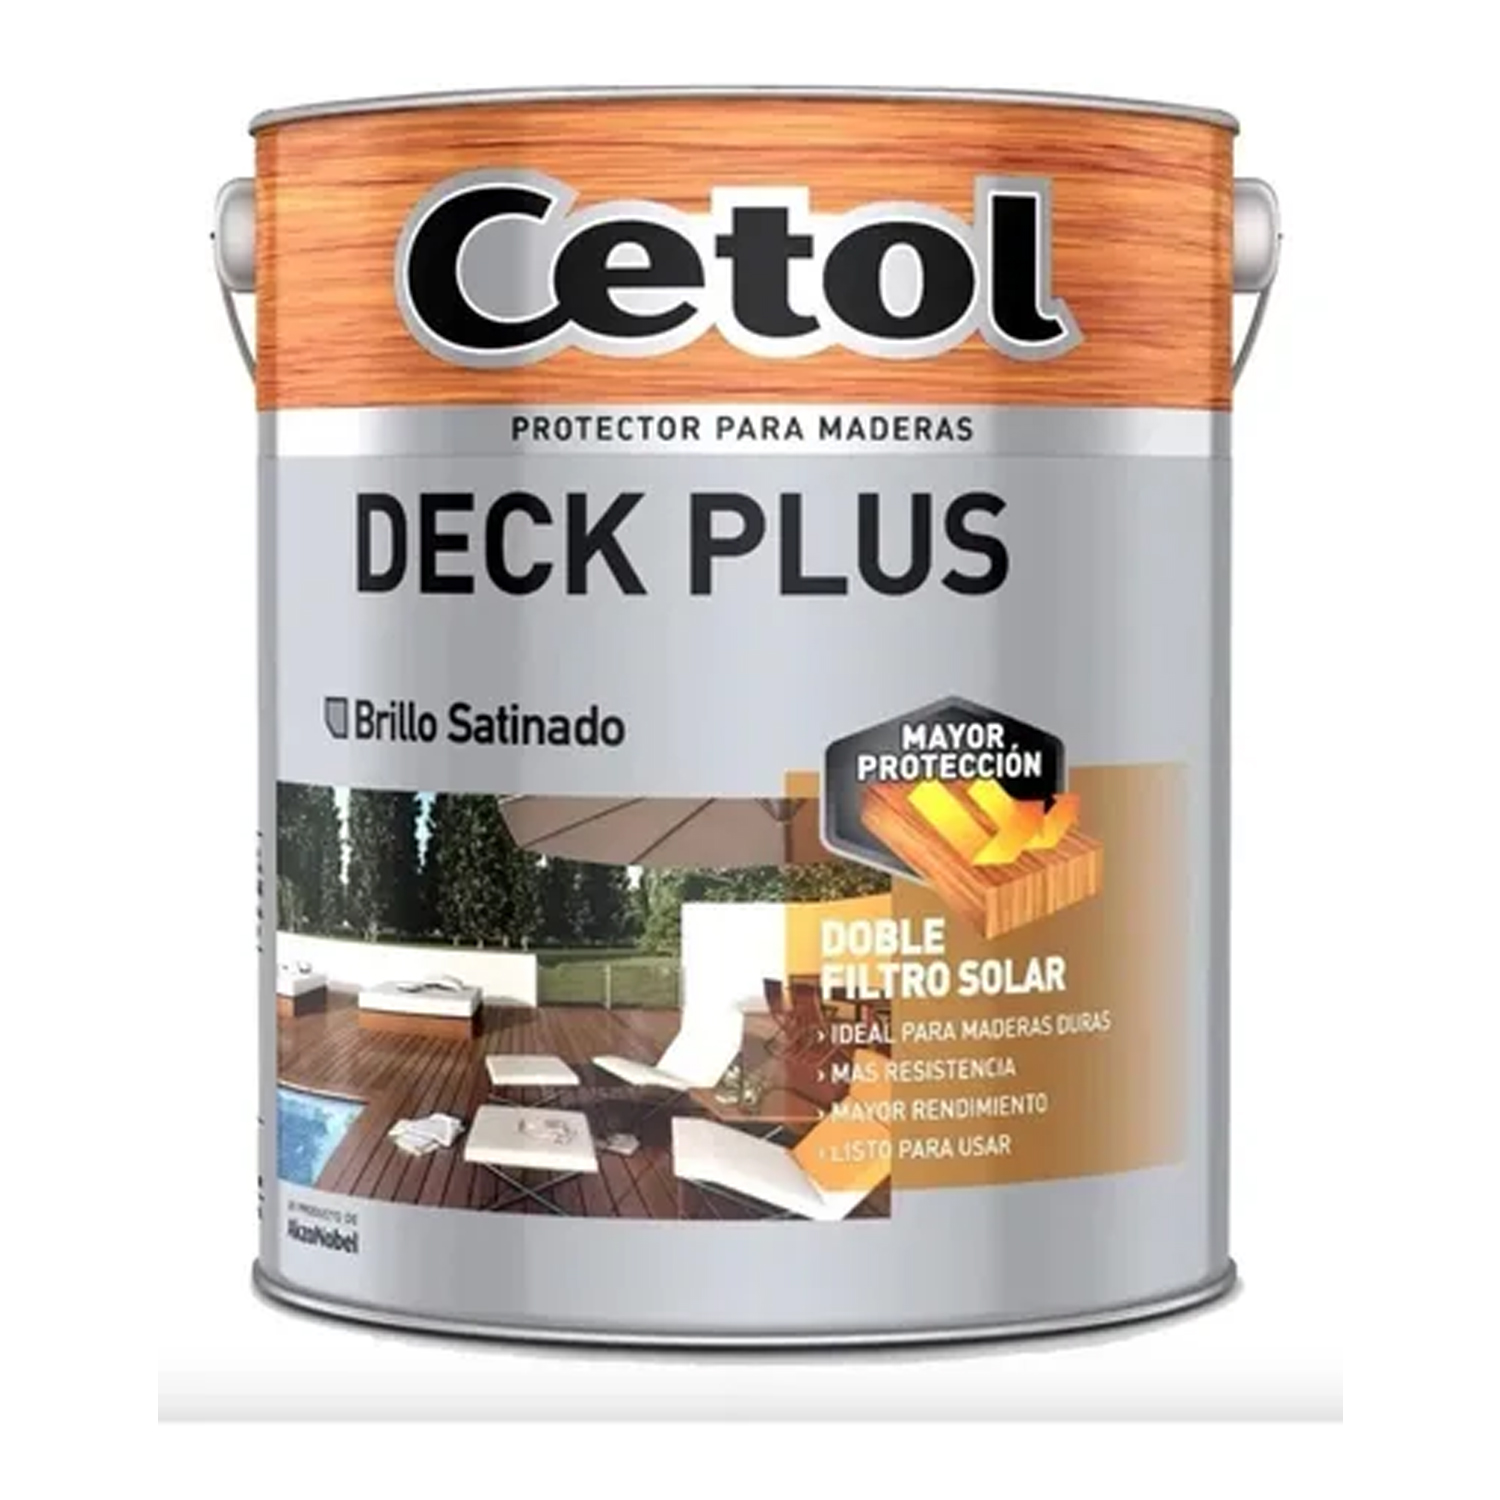 Cetol Deck Plus Teca 4 lts